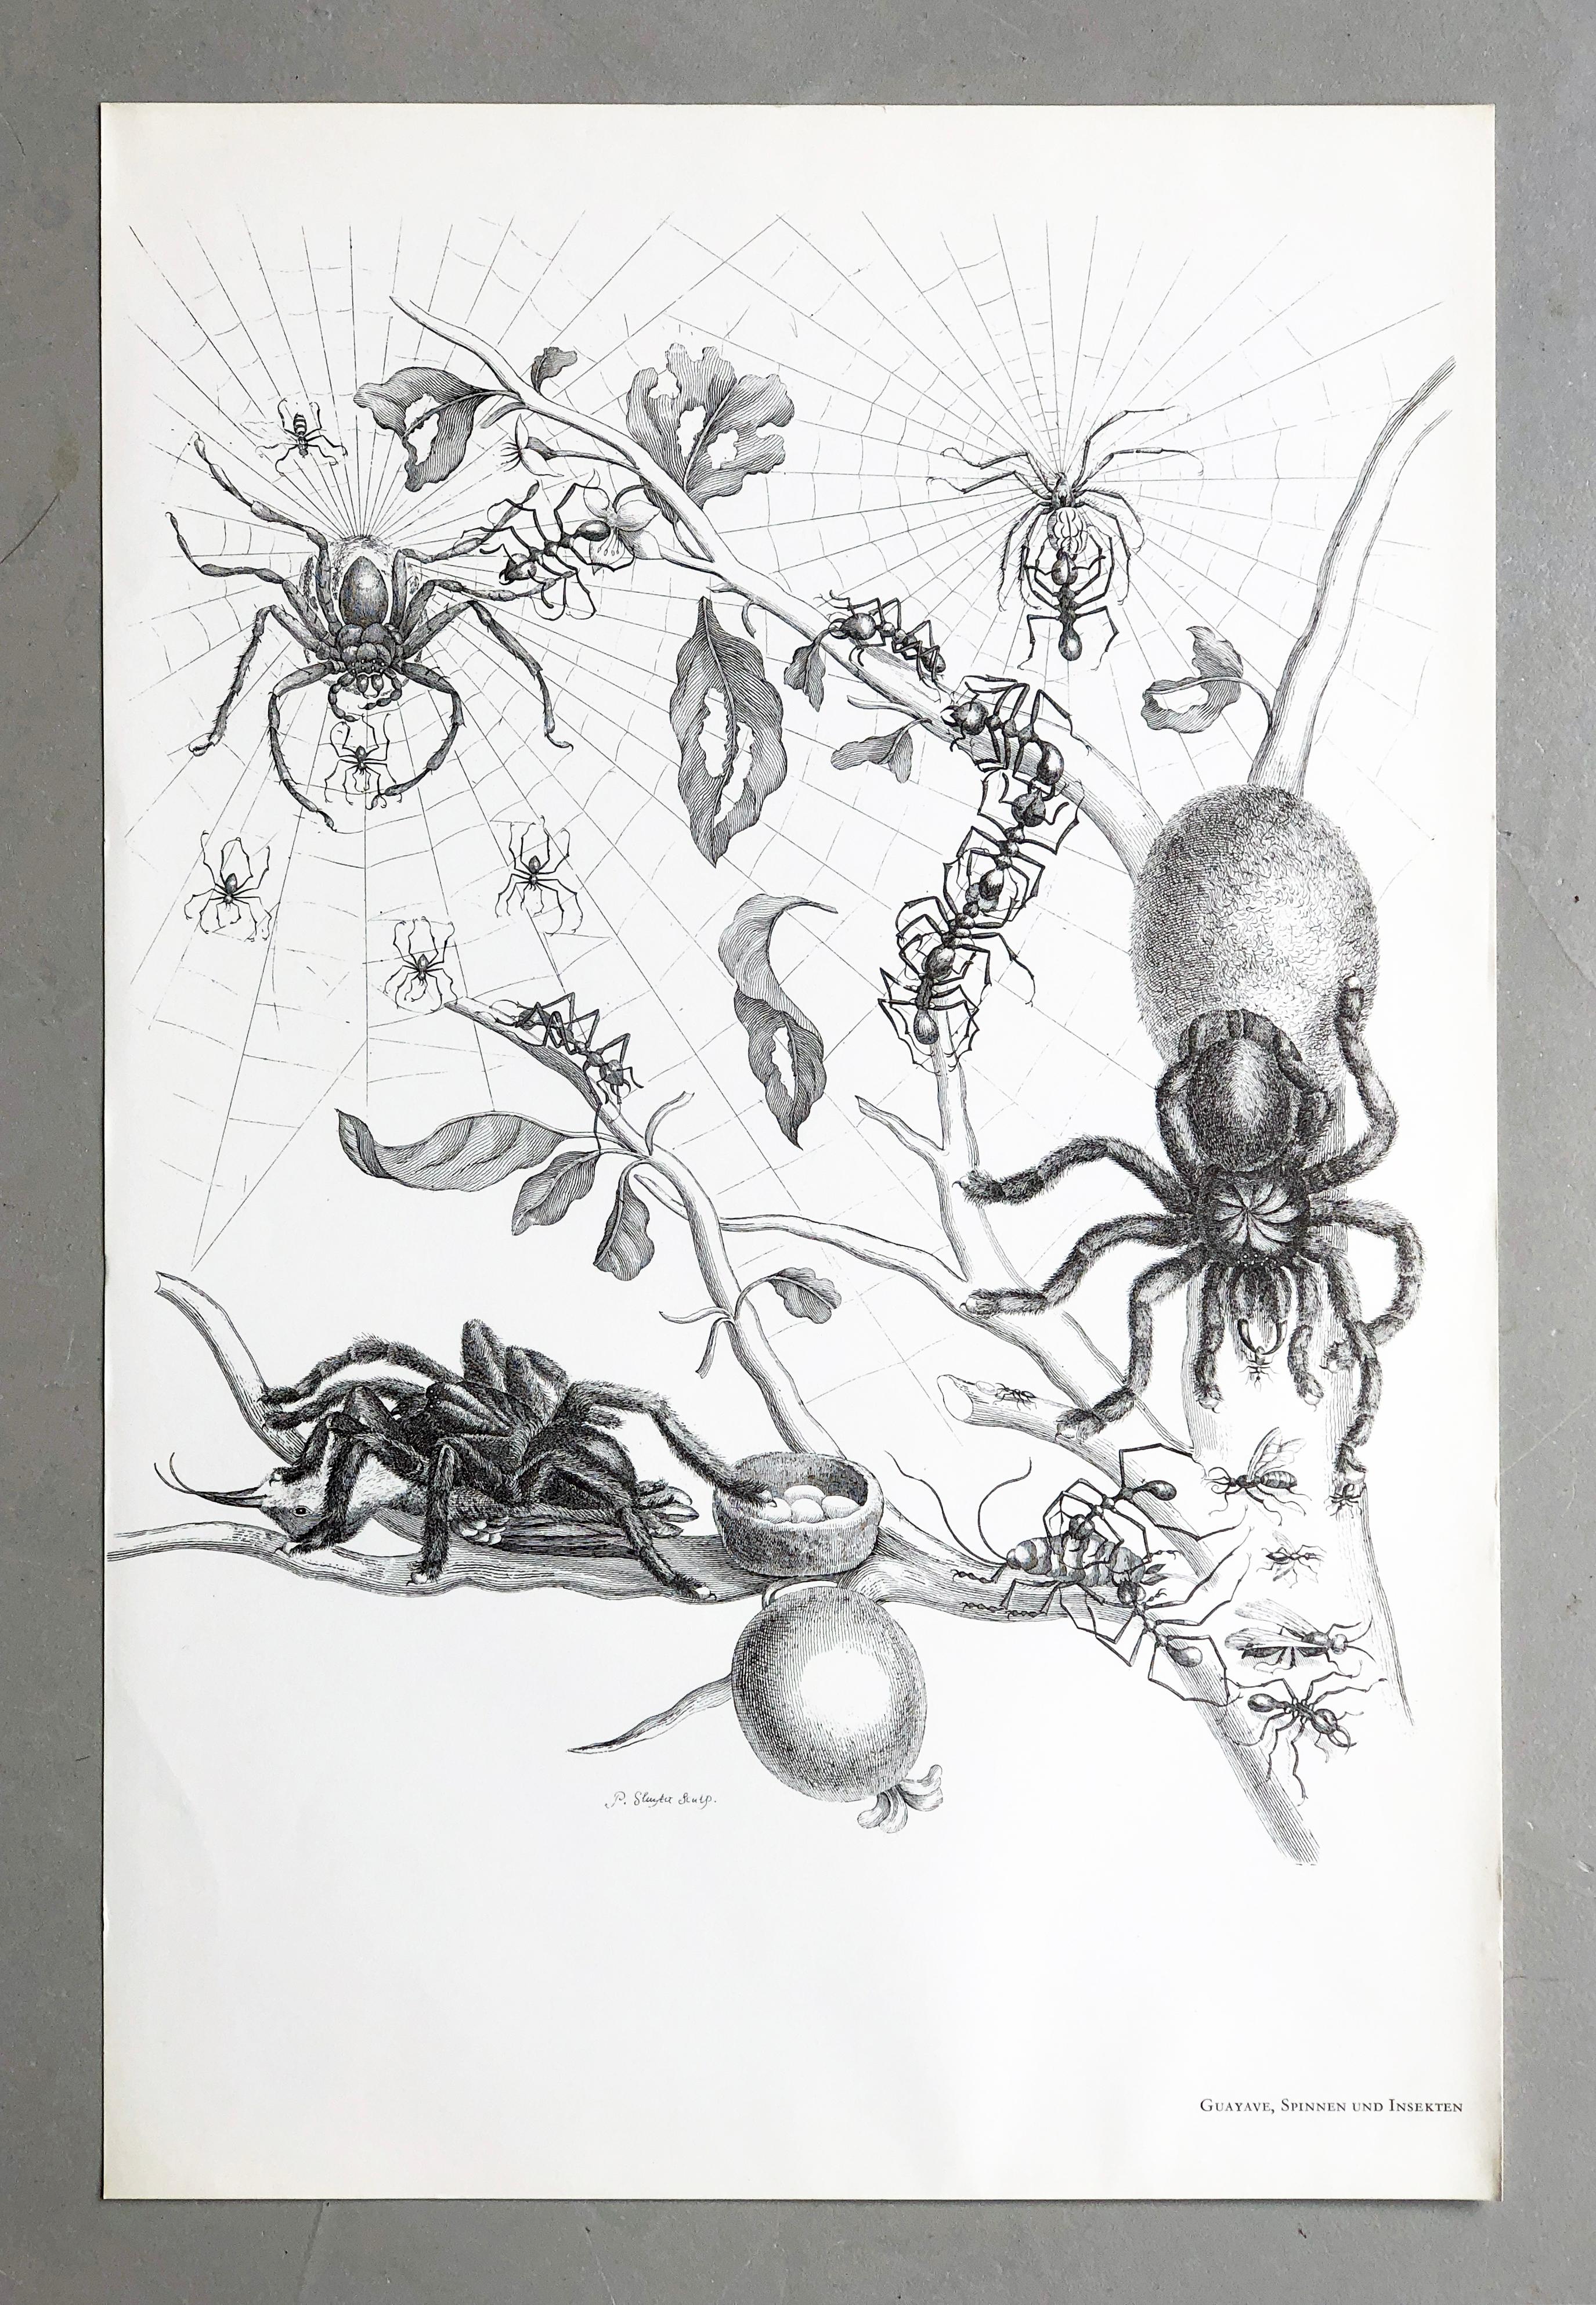 Aus Metamorphosis Insectorum Surinamensium, erstmals veröffentlicht 1705
Kupferstiche von J. Mulder, P. Sluyter (Sluiter) und D. Stoopendaal nach Maria Sybilla Merian.

Dieser Teller ist Teil einer umfassenden Sammlung von 17 Tellern. 
Ich habe eine